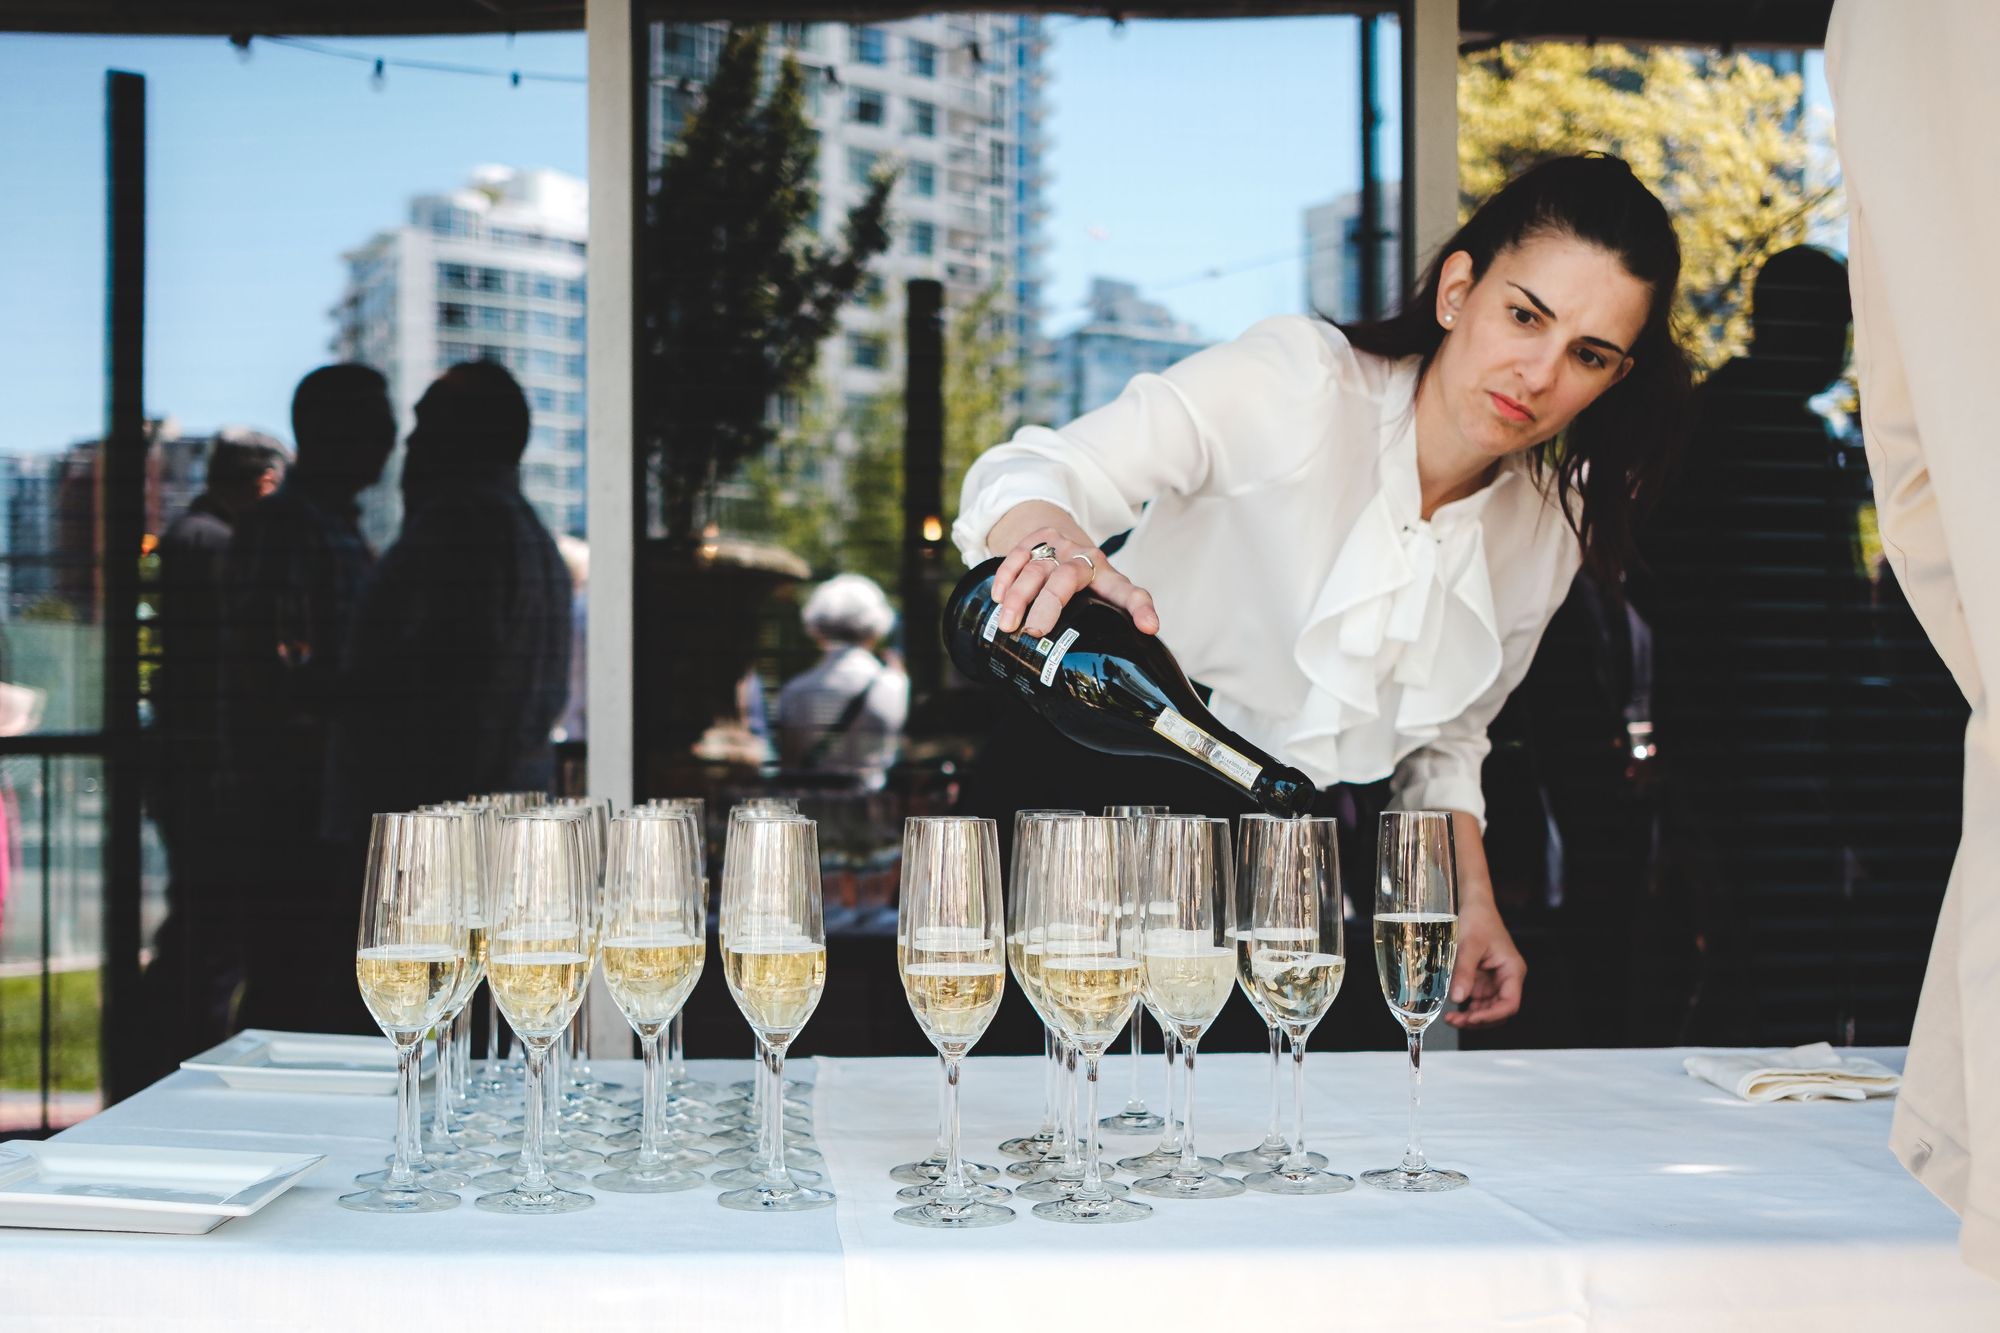 Vancouver International Wine Festival – Villa Sandi Asolo Prosecco Superiore DOCG Brut NV